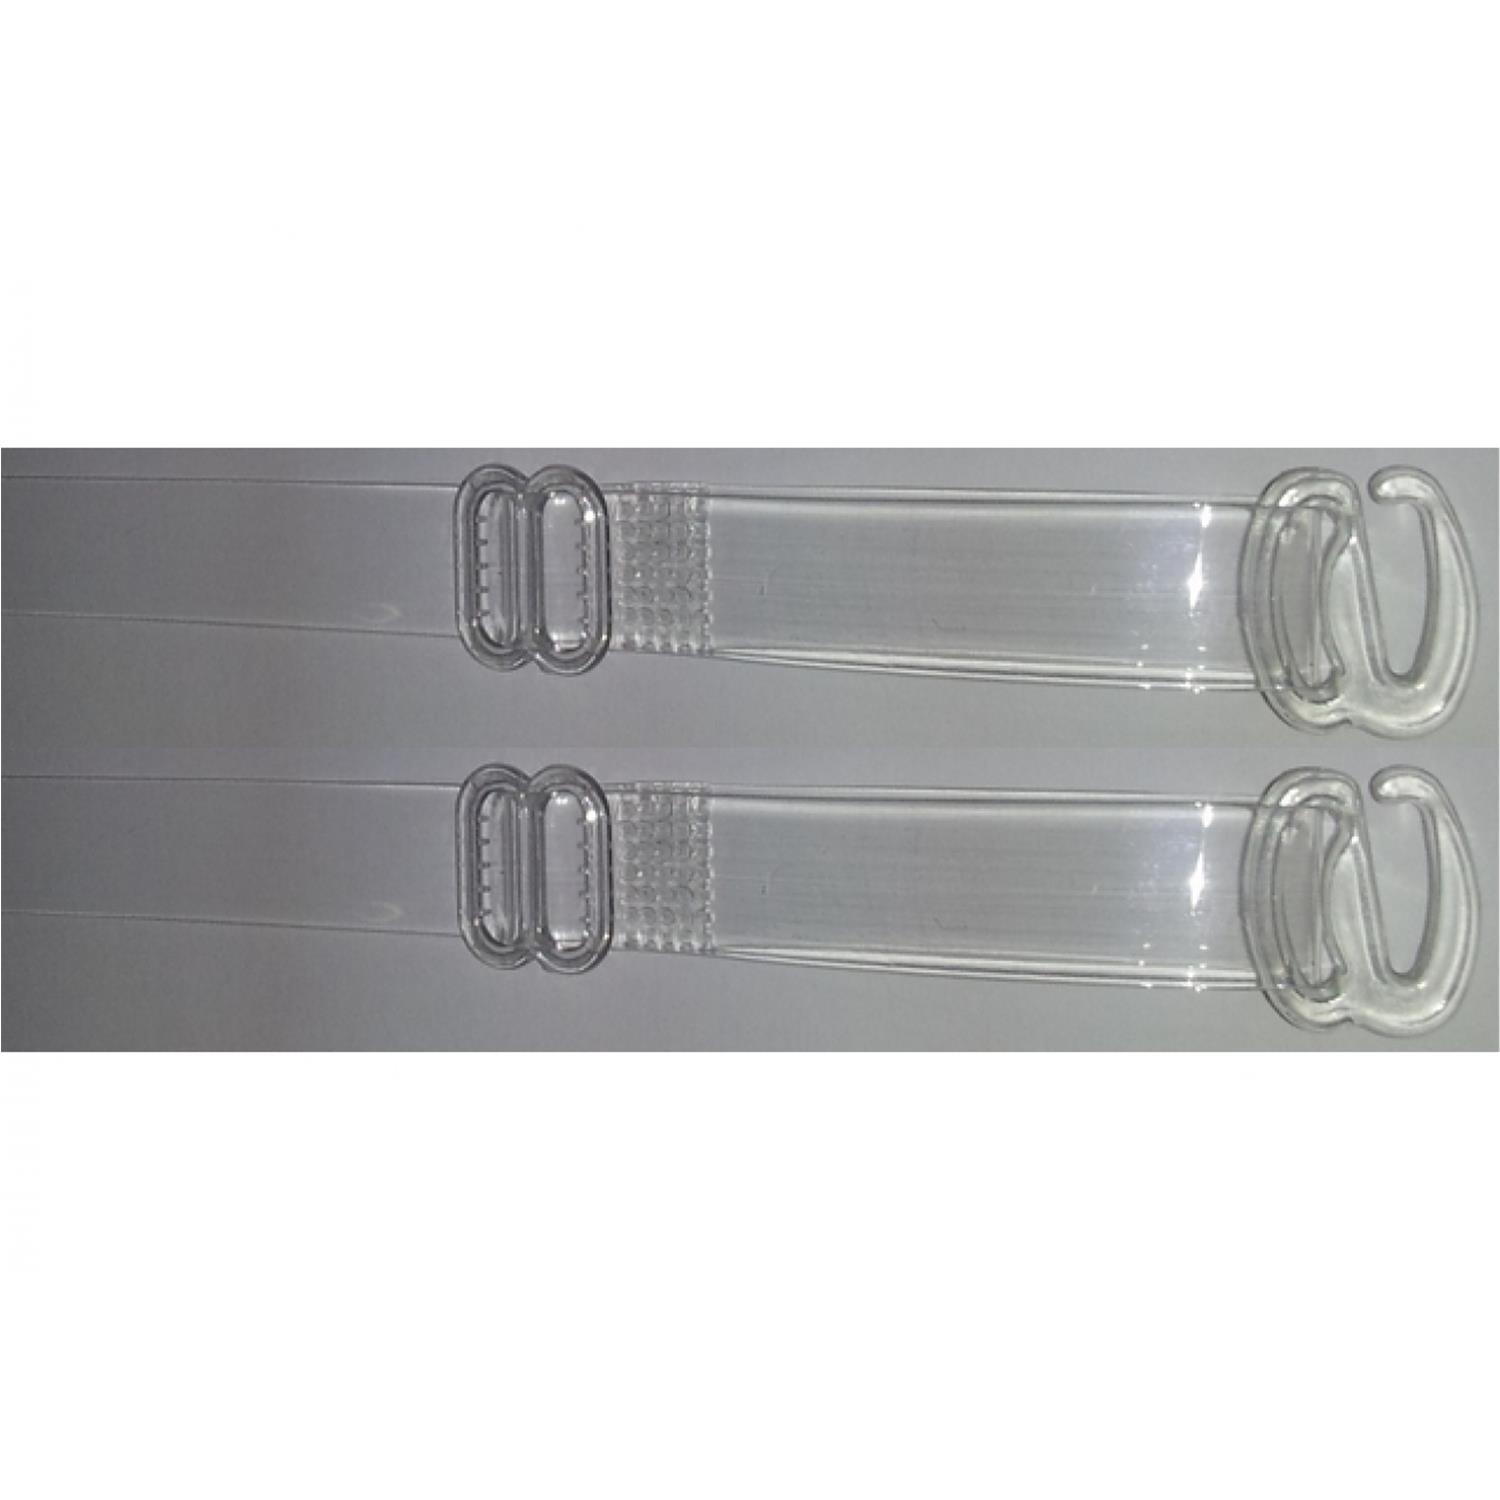 BH Träger / Silikonträger, transparent, 8mm breit